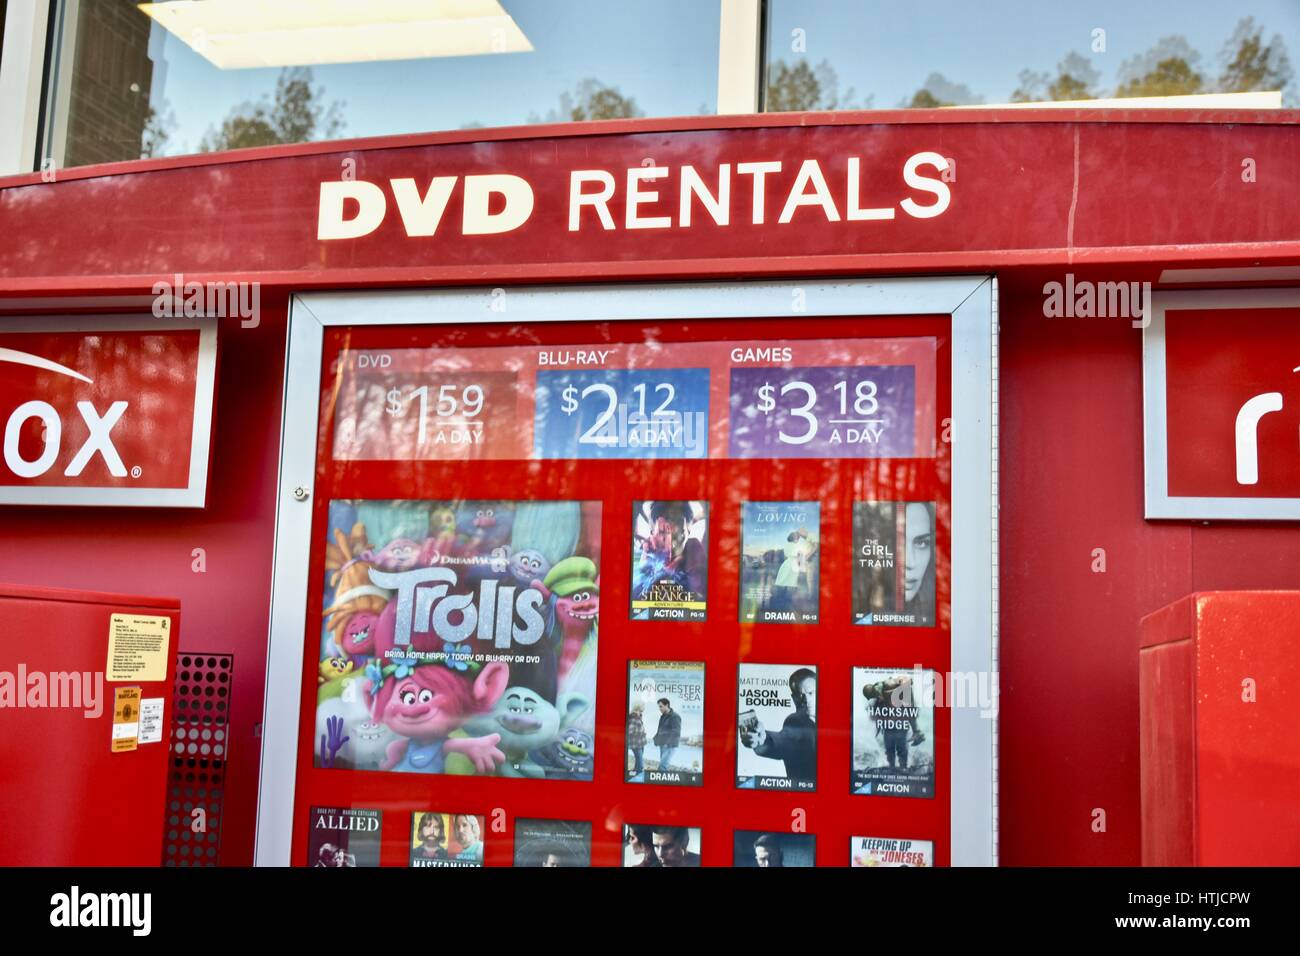 Noleggio di dvd immagini e fotografie stock ad alta risoluzione - Alamy